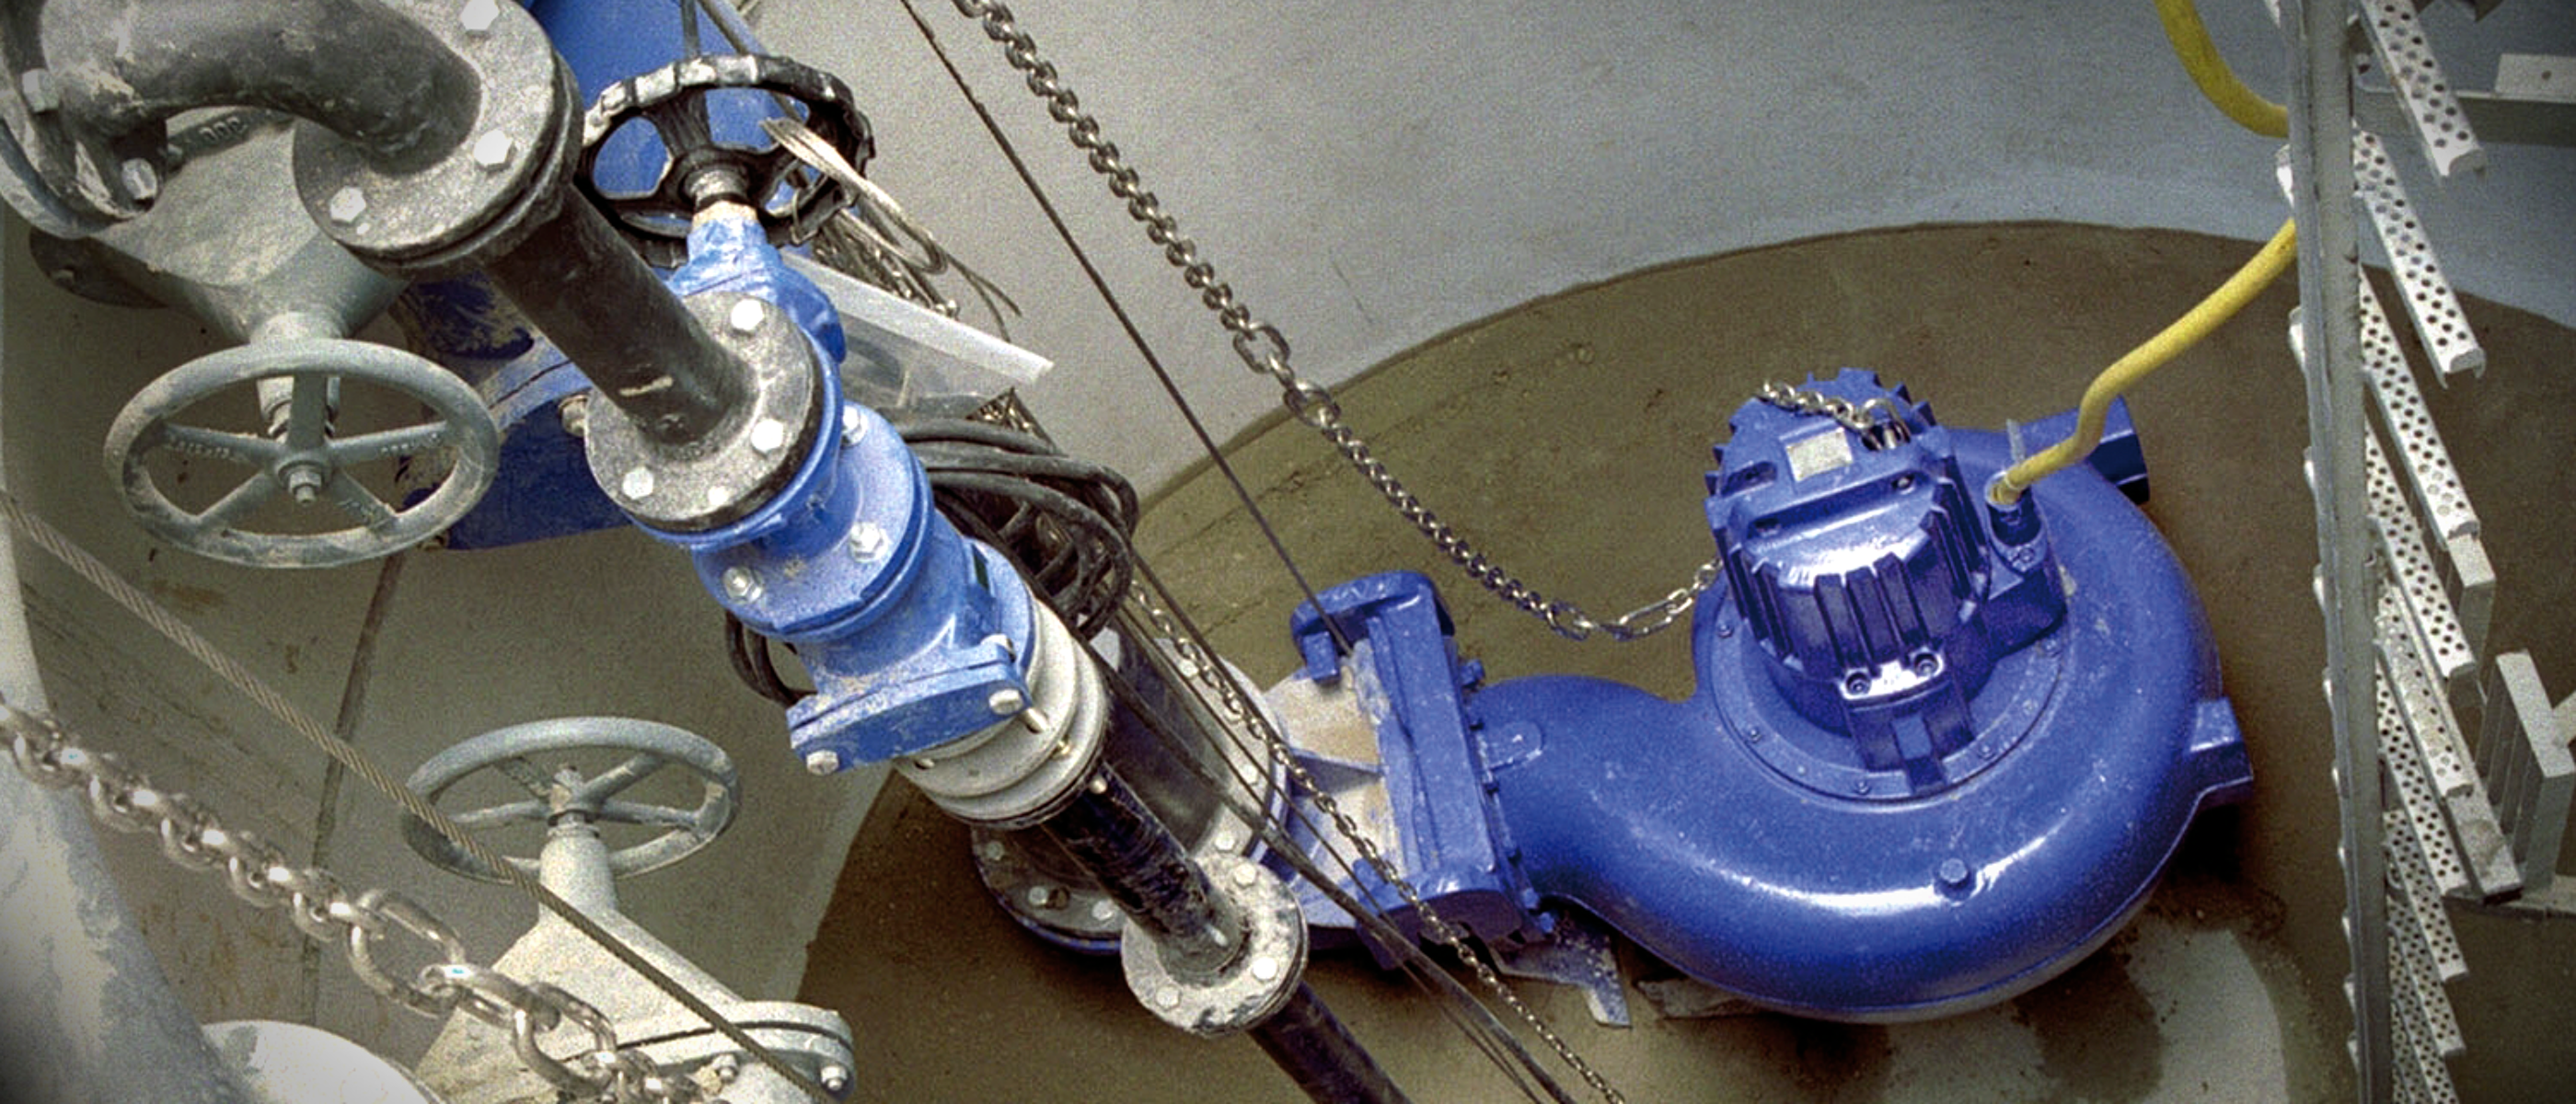 KSB Tauchmotorpumpen vom Typ Amarex KRT, am Boden eines Beckens installiert